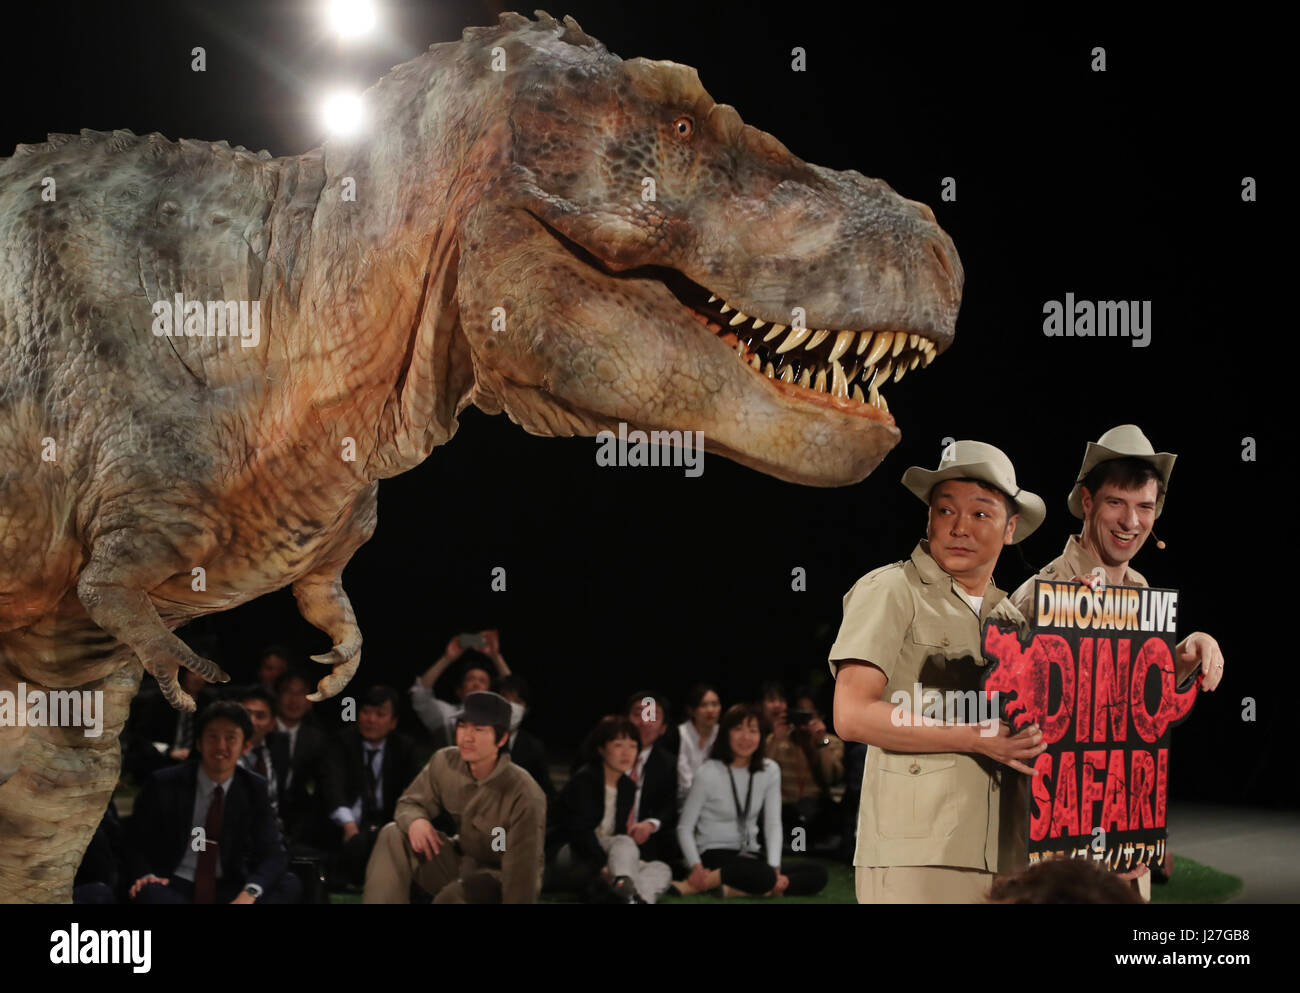 Tokio, Japón. 25 abr, 2017. Un actor vistiendo traje mecánico con forma de  dinosaurios 'Dino-tronics' se acerca a morder a los jefes de los comediantes  